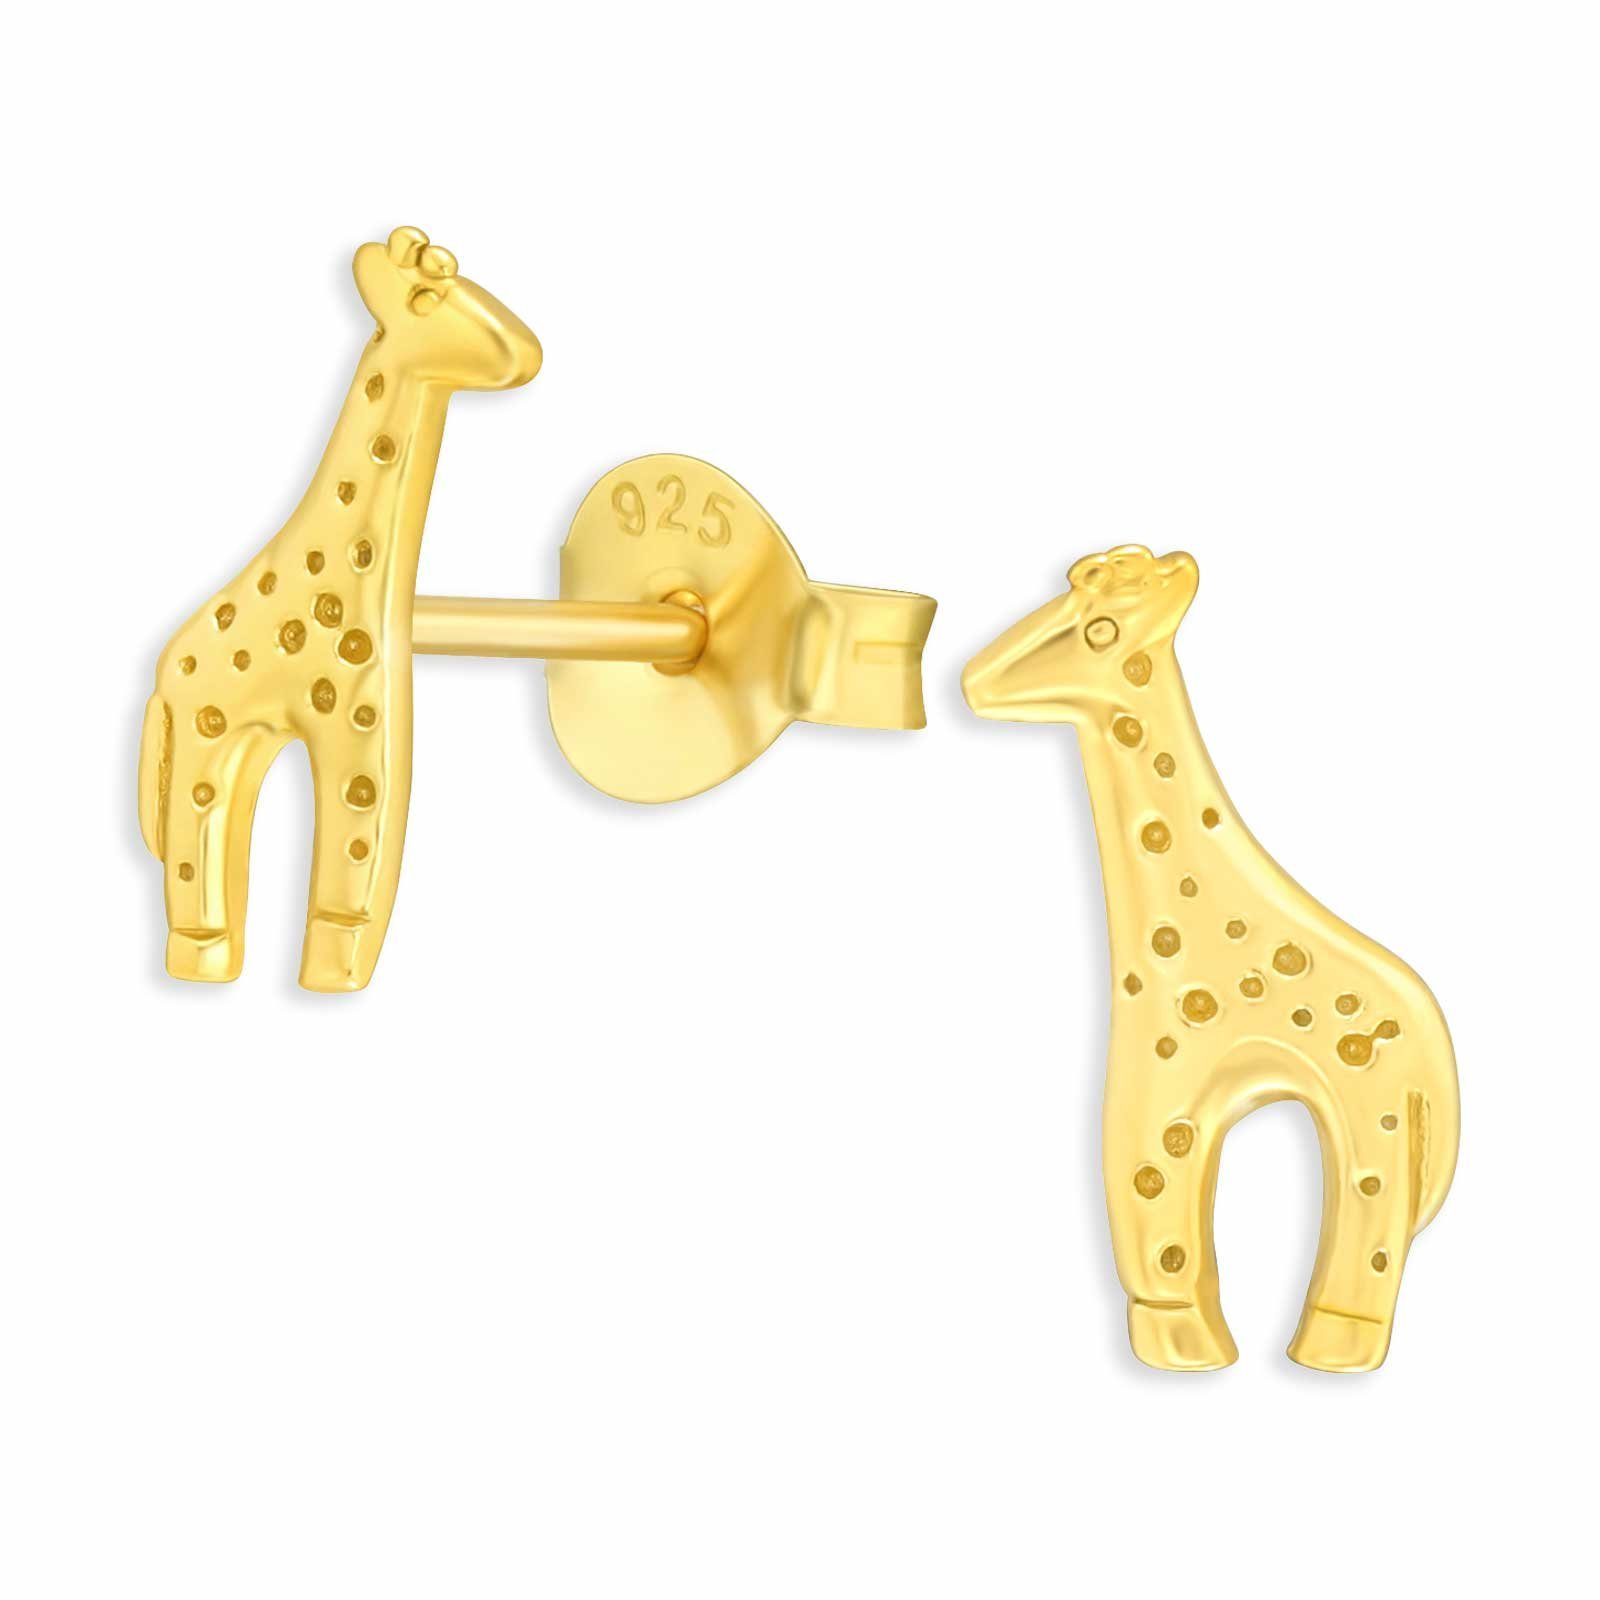 Ohrringe Giraffen aus Silber Ohrstecker Monkimau Paar Gold 925 plattiert (Packung)